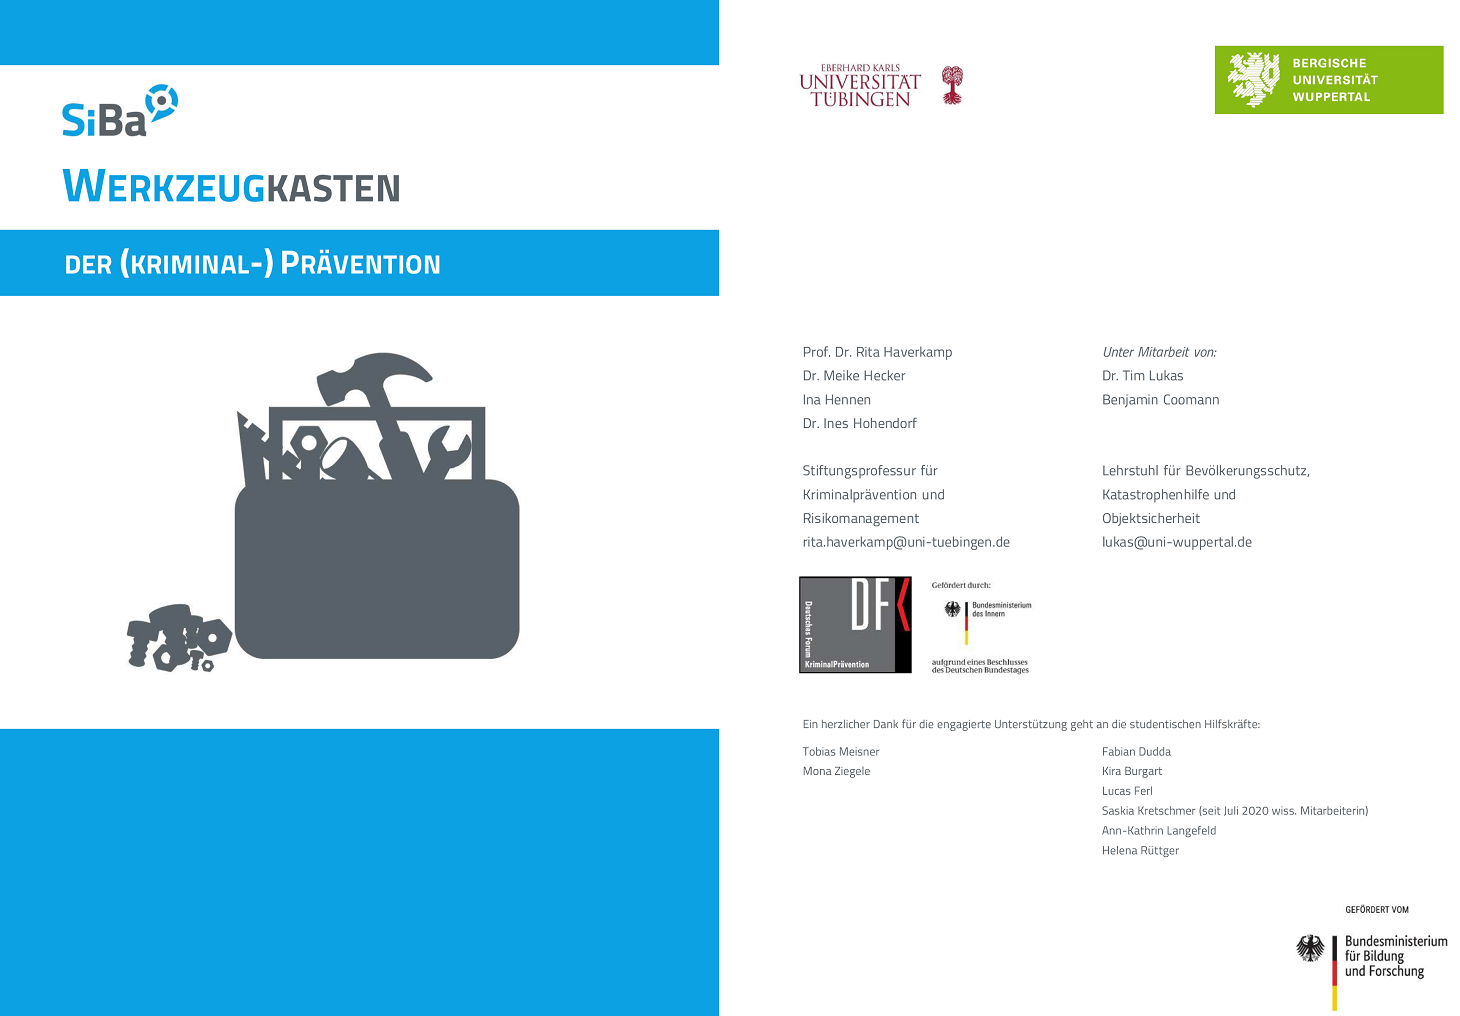 SiBa-Werkzeugkasten und grafische Darstellung von Werkzeugen sowie Nennung der beteiligten Akteure wie Deutsches Zentrum für Kriminalprävention.